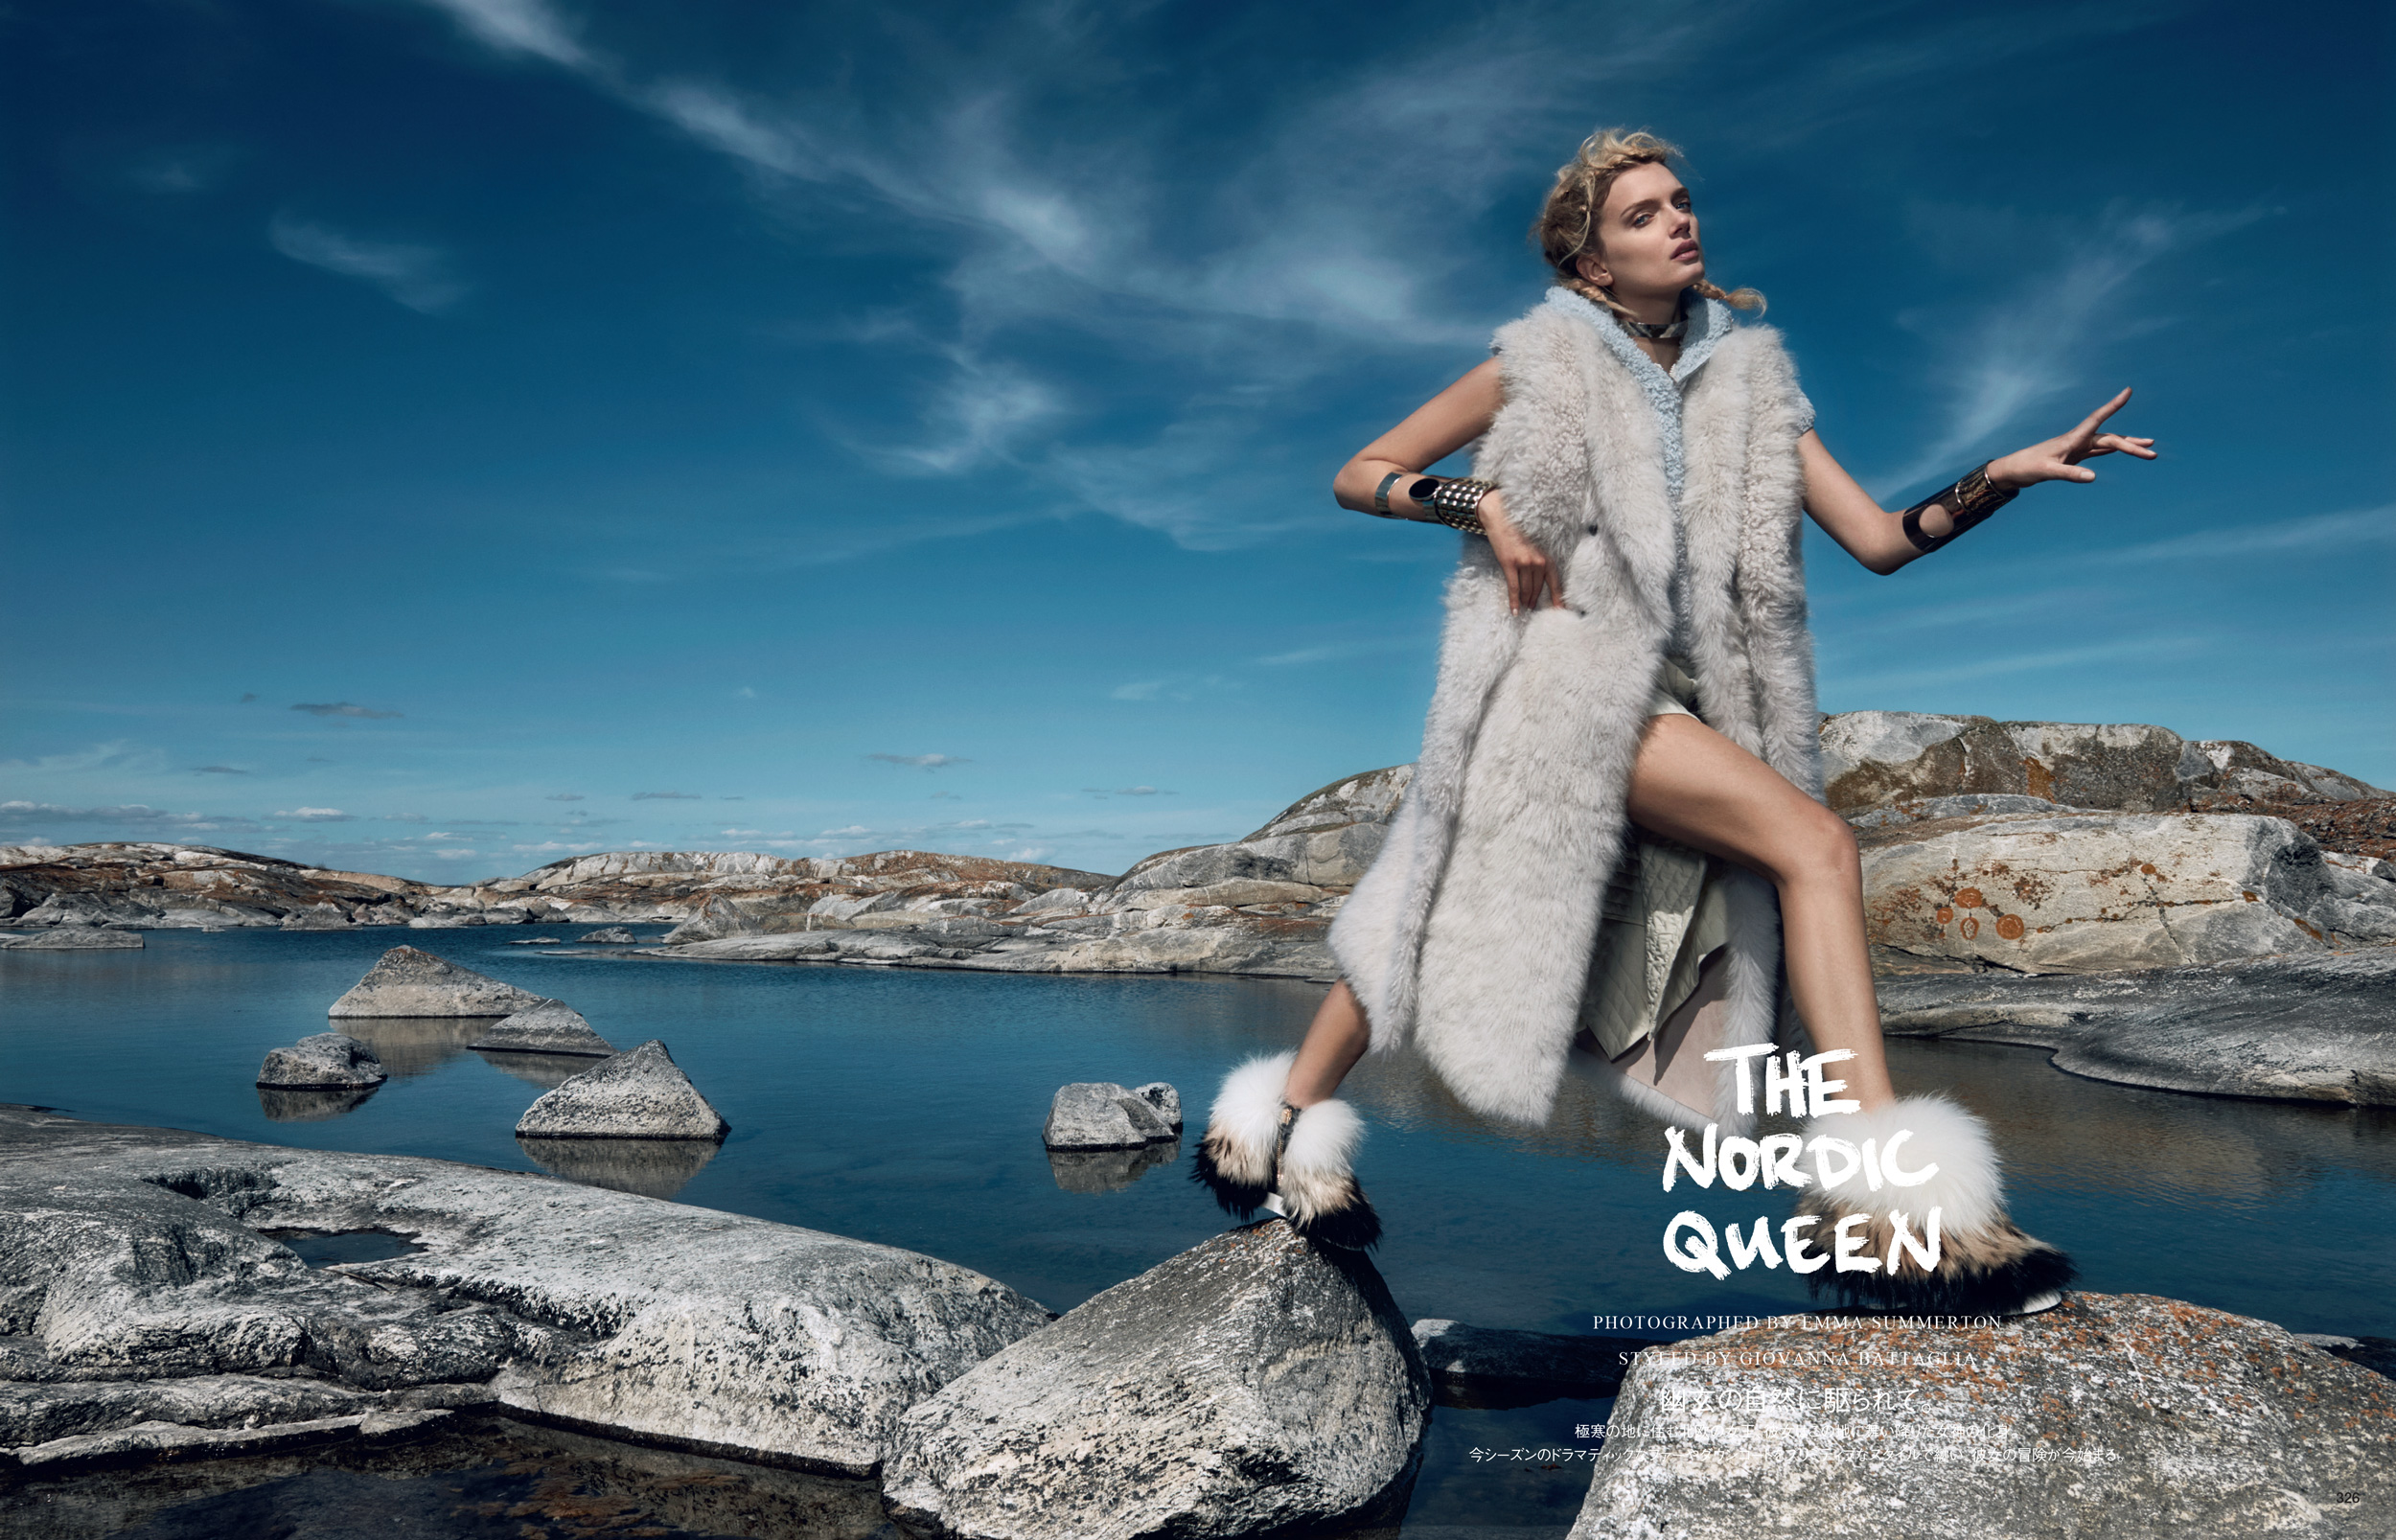 Giovanna-Battaglia-Vogue-Japan-The-Nordic-Queen-October-2015-Emma-Summerton-1.jpg